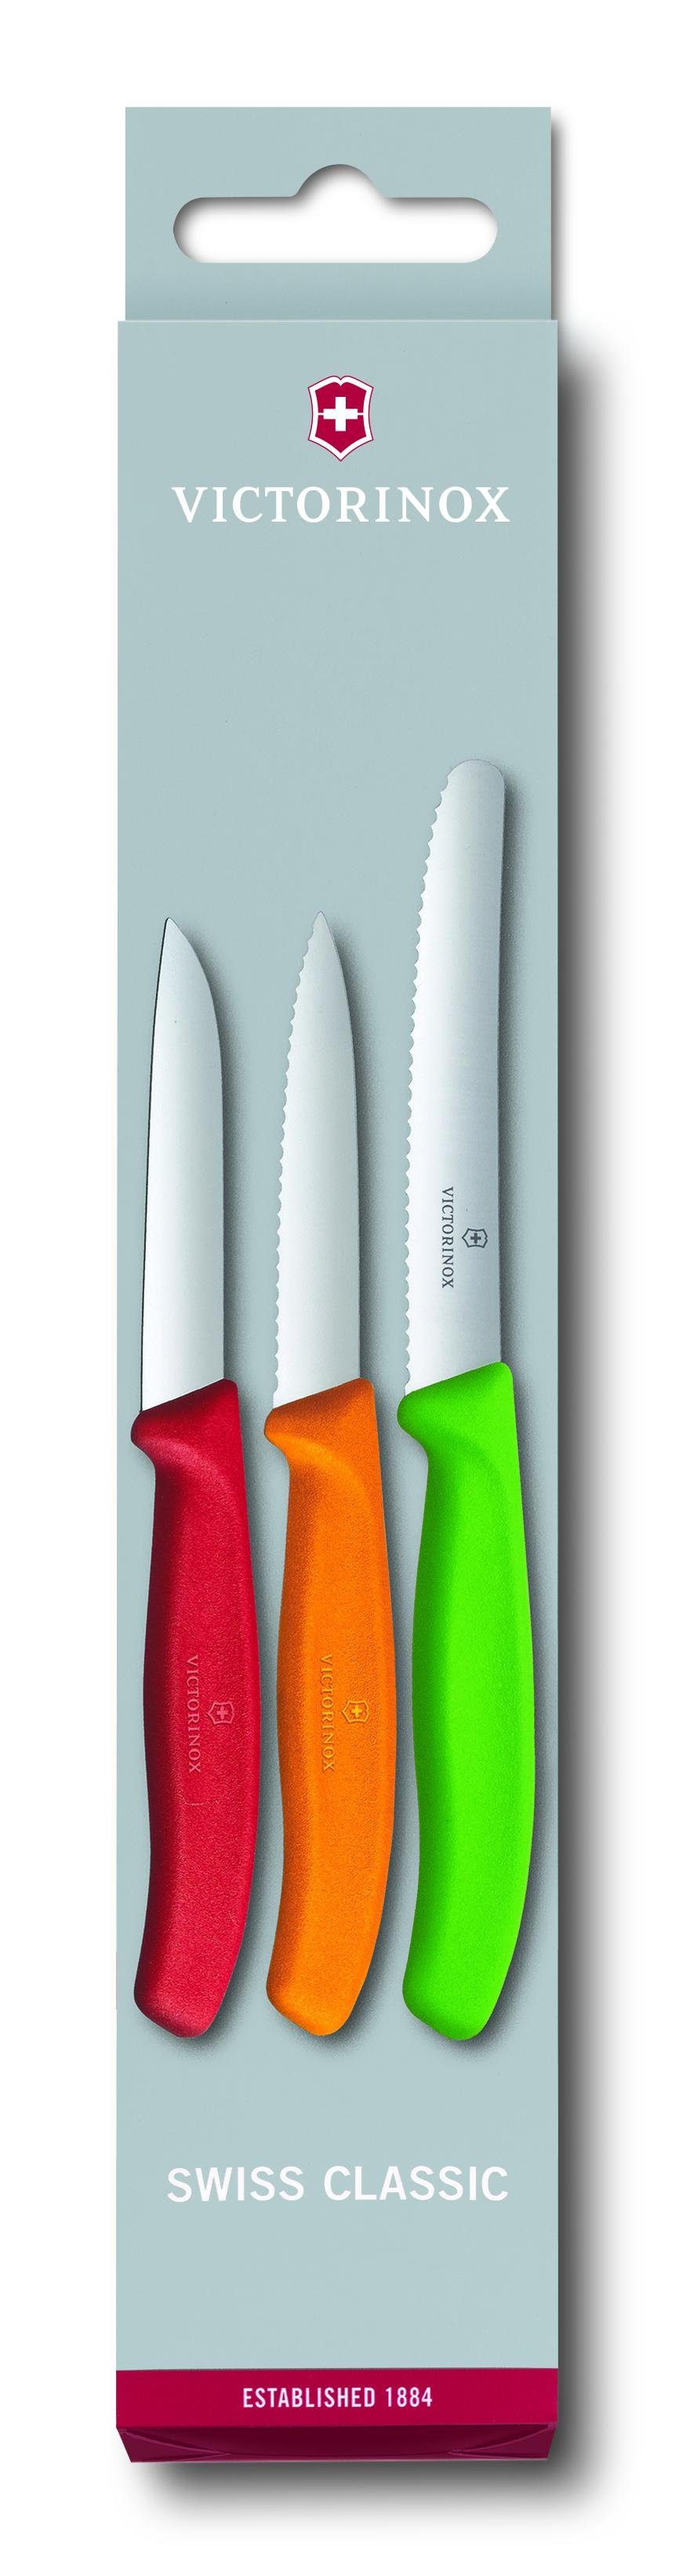 Taschenmesser Classic Swiss 3teilig VICTORINOX Set Victorinox Messerset